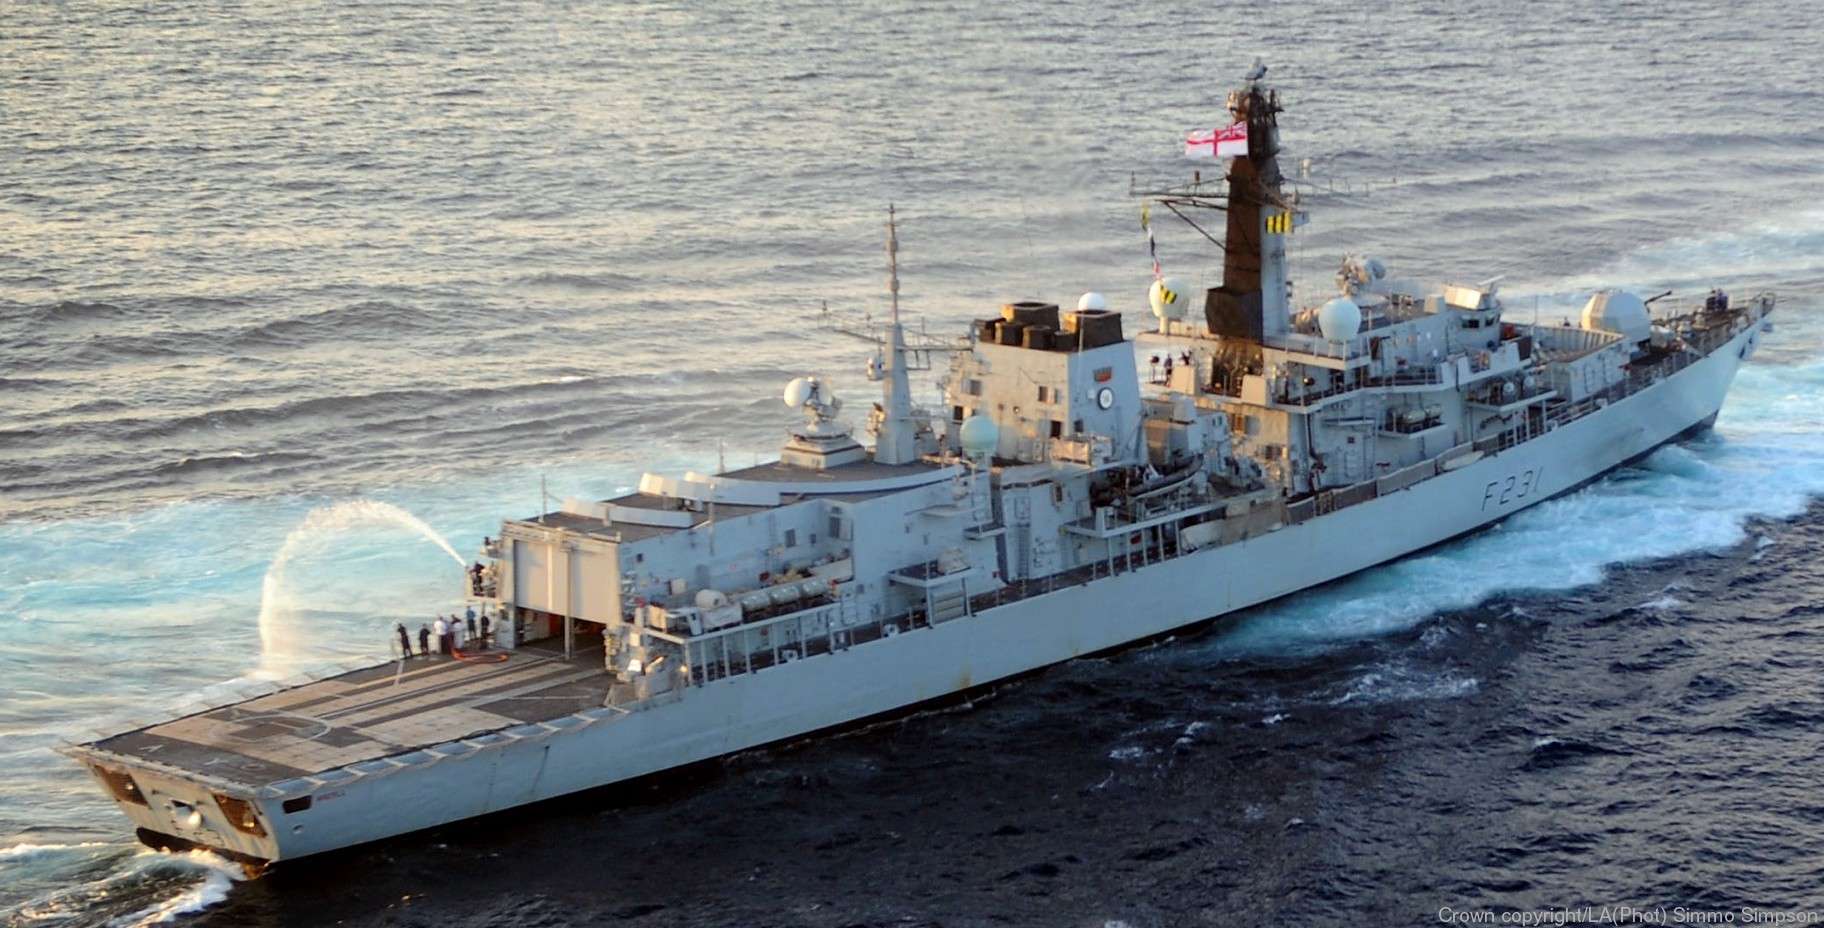 Βρετανική φρεγάτα εναντίον ρωσικού πολεμικού πλοίου!